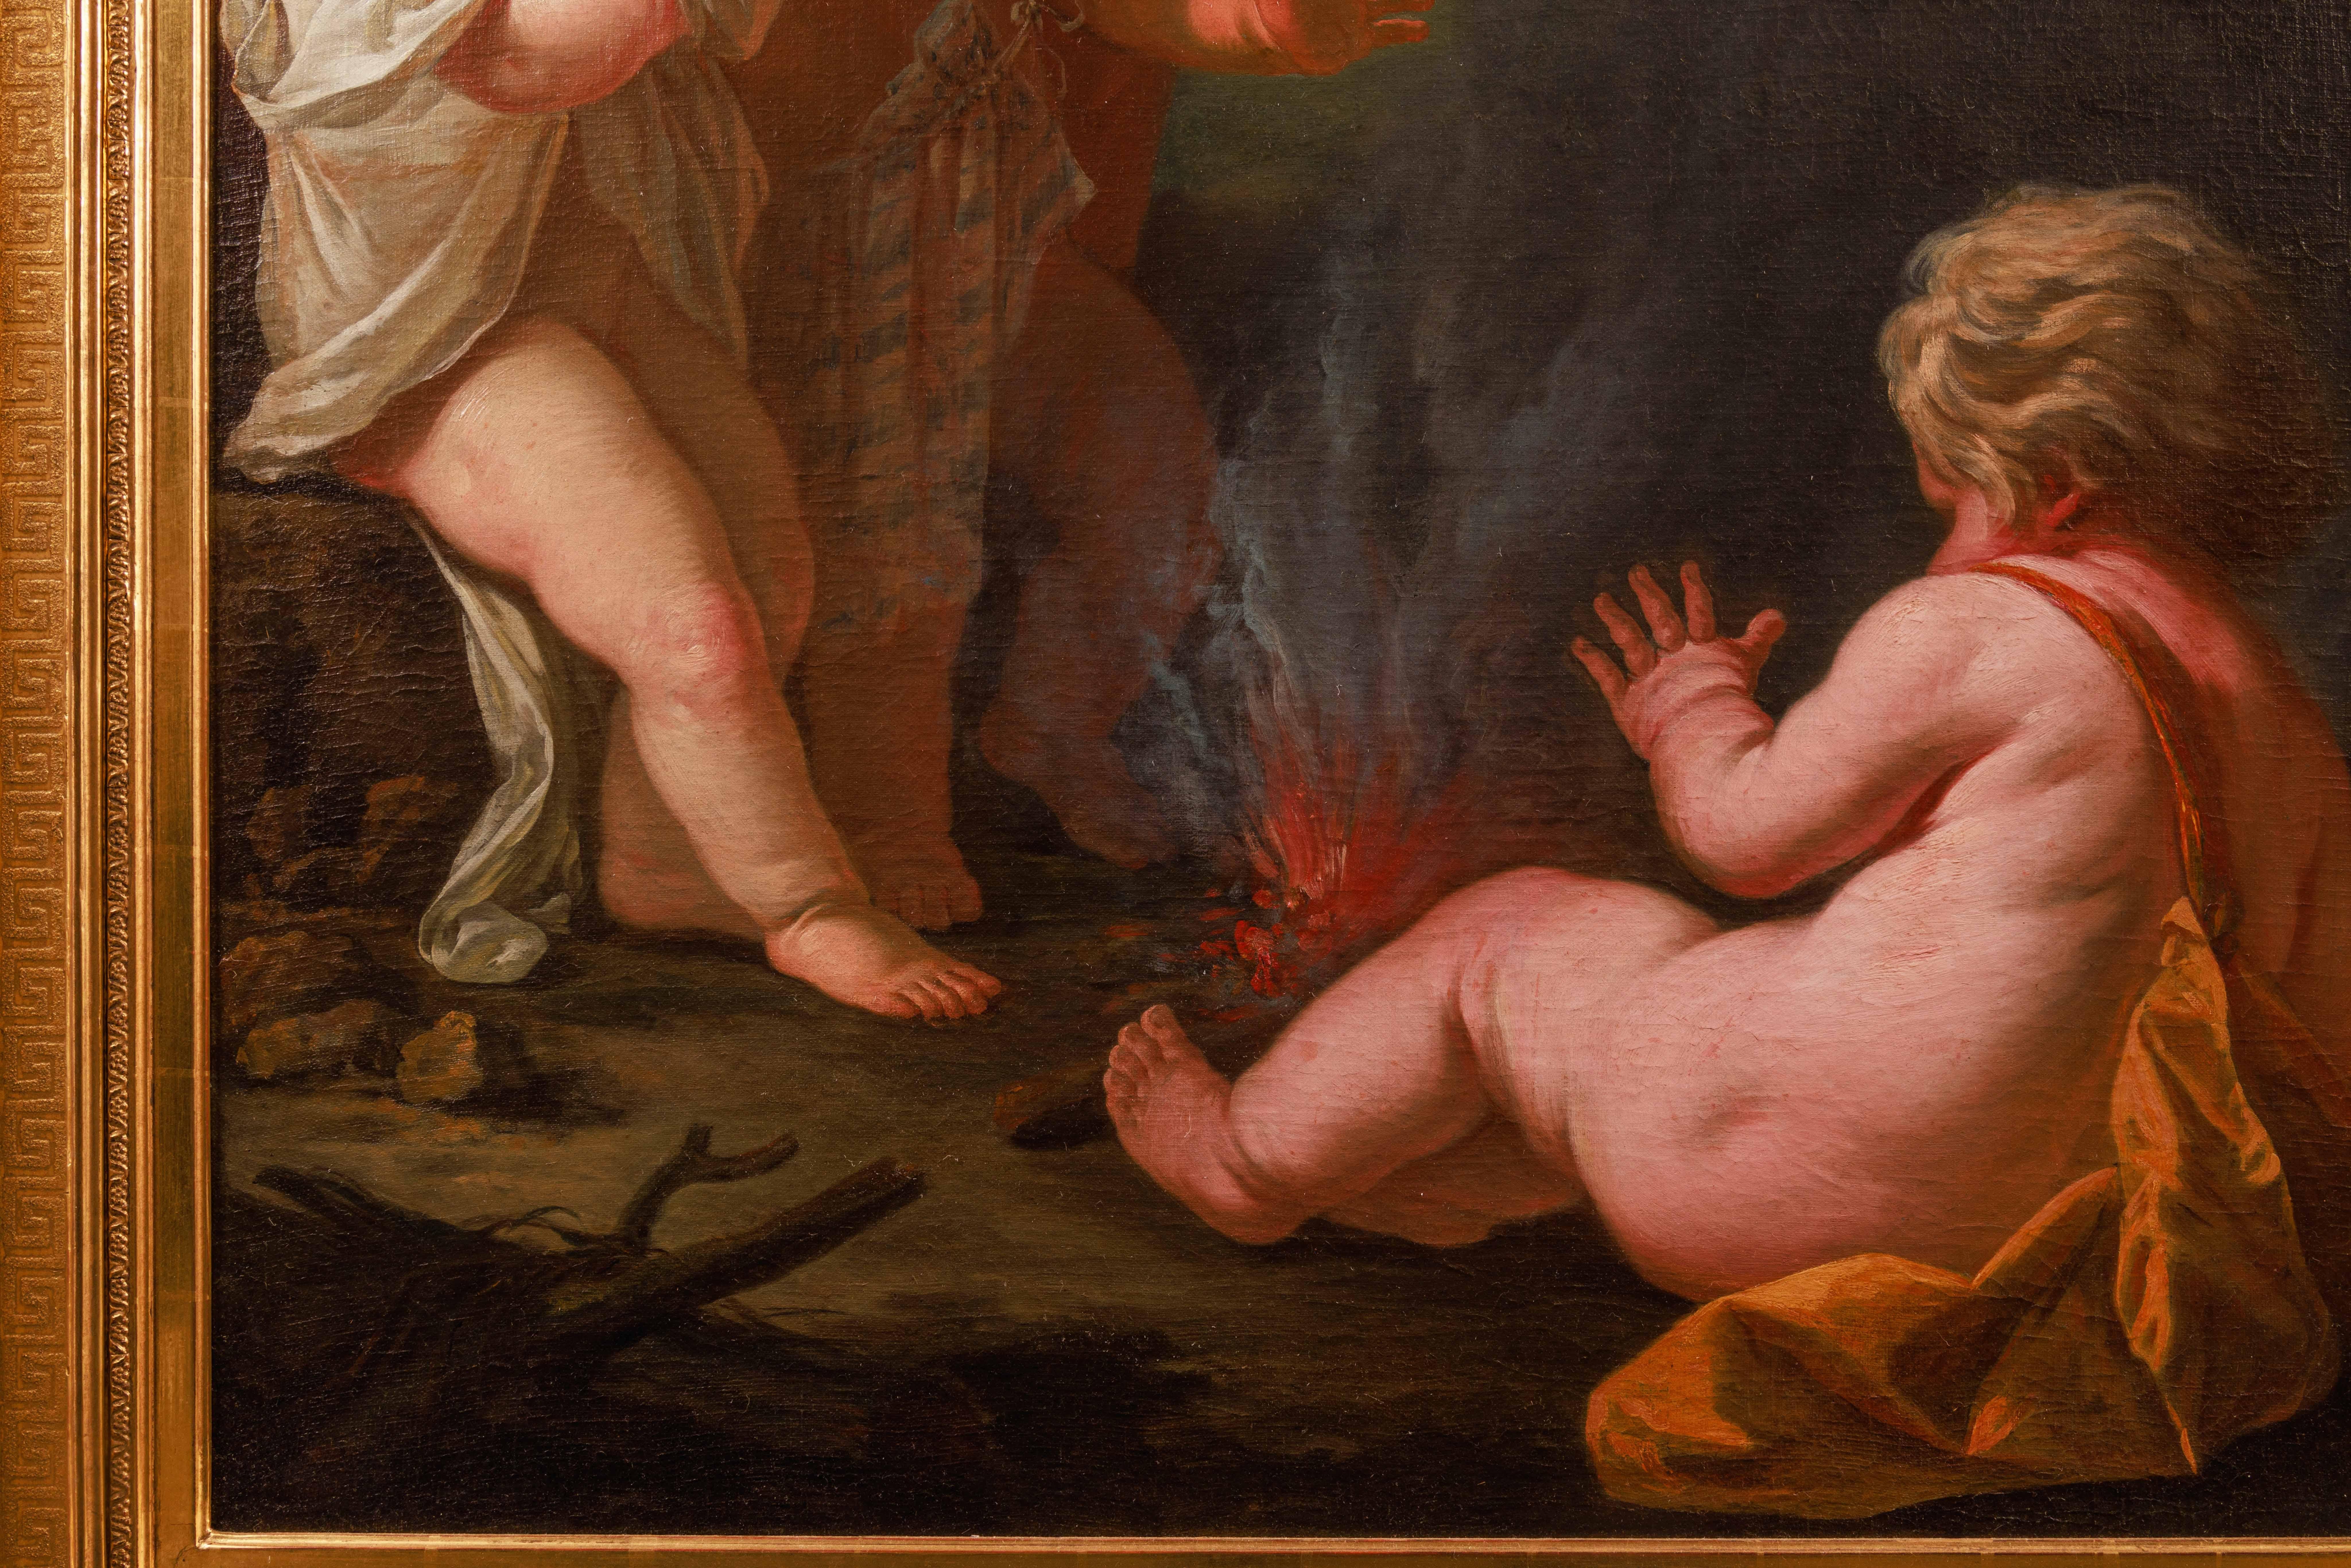 Kreis von Jean Honore Fragonard (Französisch 1732-1806) Ein außergewöhnliches Gemälde von drei Putten und Feuer, um 1795.

Meisterhaftes Gemälde aus dem späten 18. Jahrhundert, Öl auf Leinwand, das zwei Putten darstellt, die ihr Geschwisterchen ins